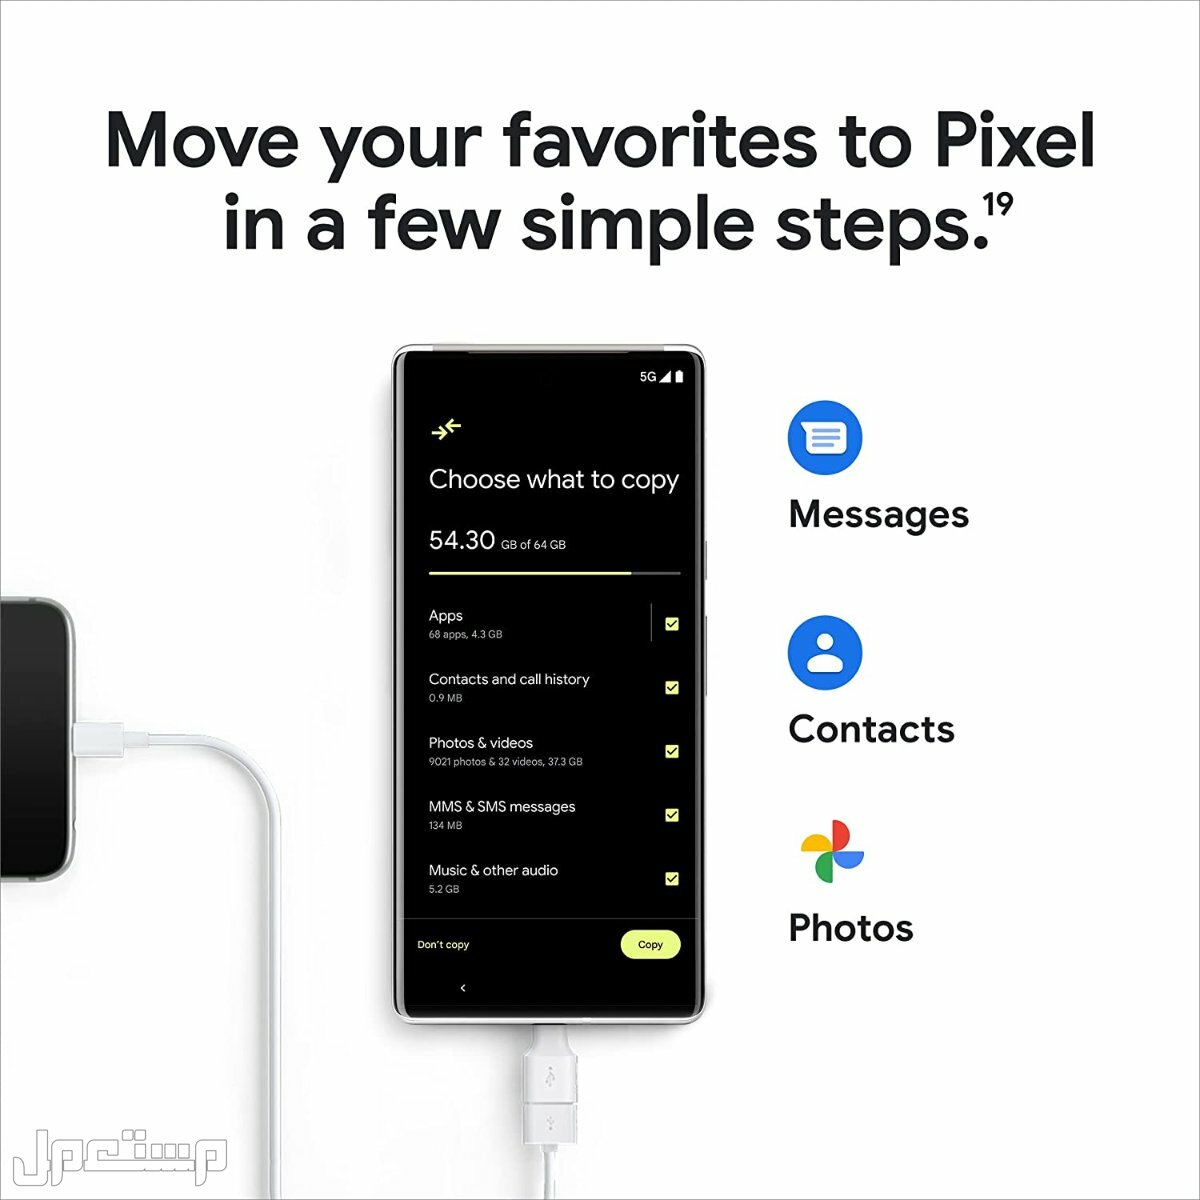 هواتف جوجل: كل ما تحتاج لمعرفته حول هواتف Pixel في الأردن جوال قوقل